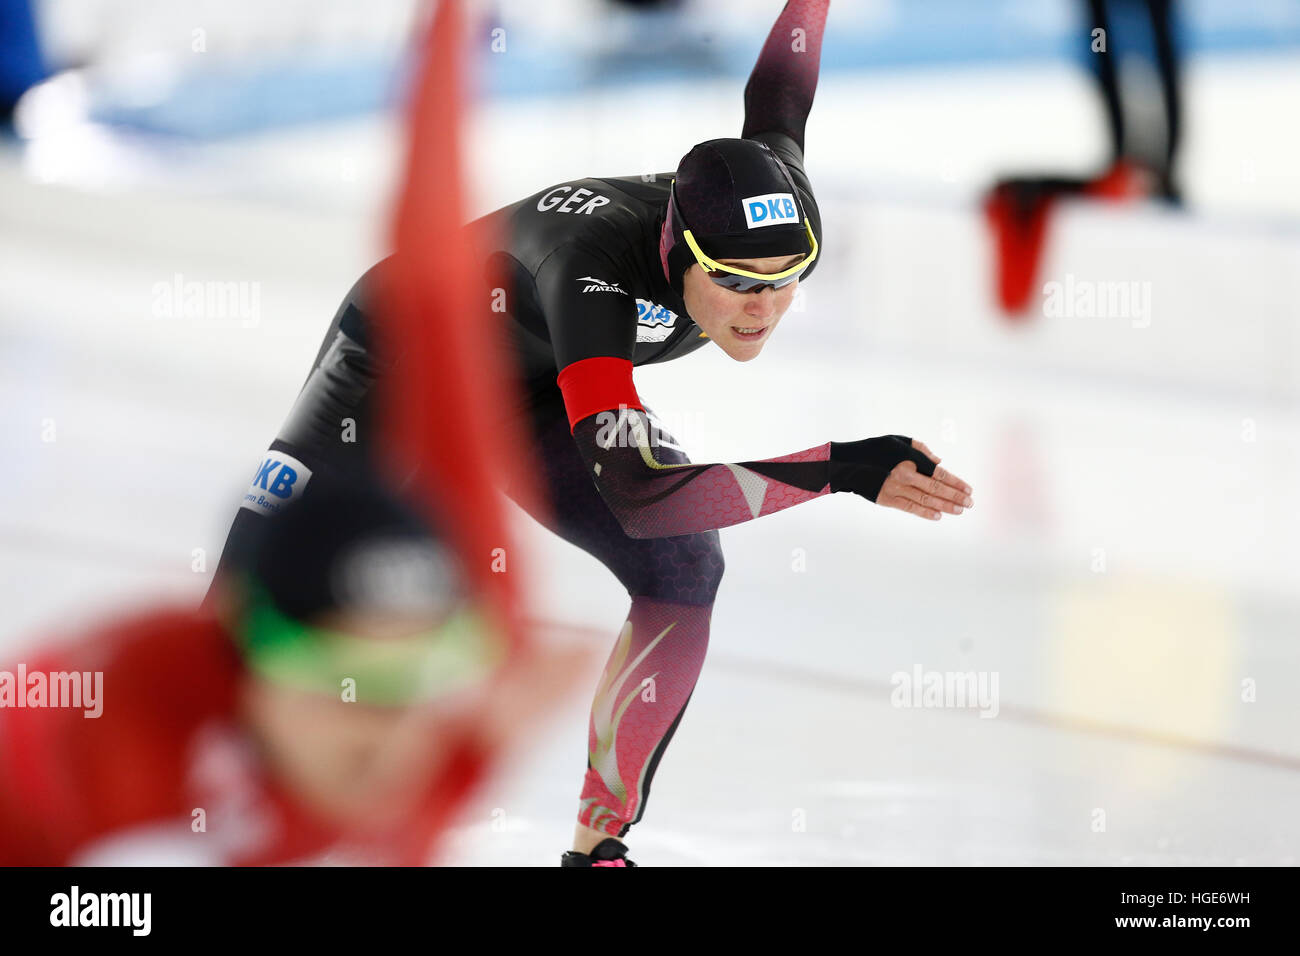 Velocità tedesco skater Gabriele Hirschbichler in azione durante la donna sprint/multi evento presso il pattinaggio di velocità Campionati Europei a Thialf Ice Rink di Heerenveen, Paesi Bassi, 08 gennaio 2017. Foto: Vincent Jannink/Vincent Jannink/dpa Foto Stock